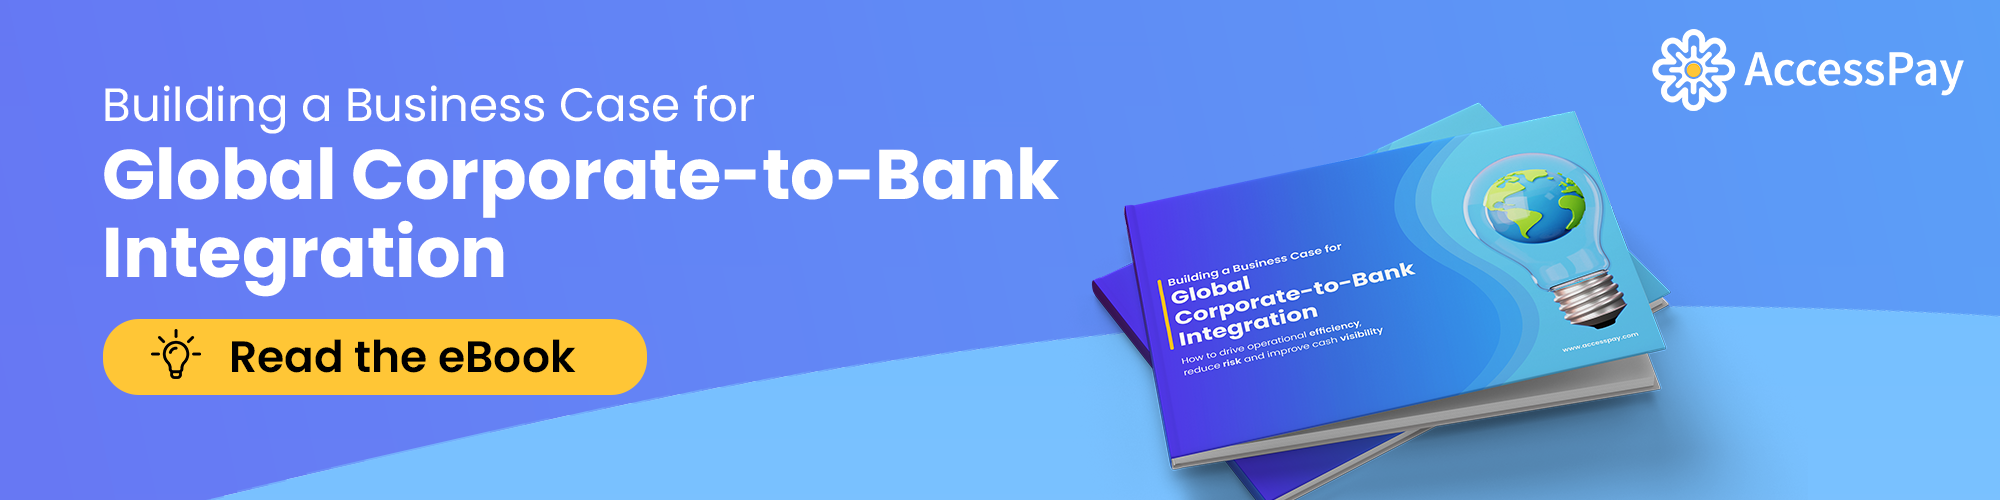 företag-till-bank-integration-ebook-cta-banner